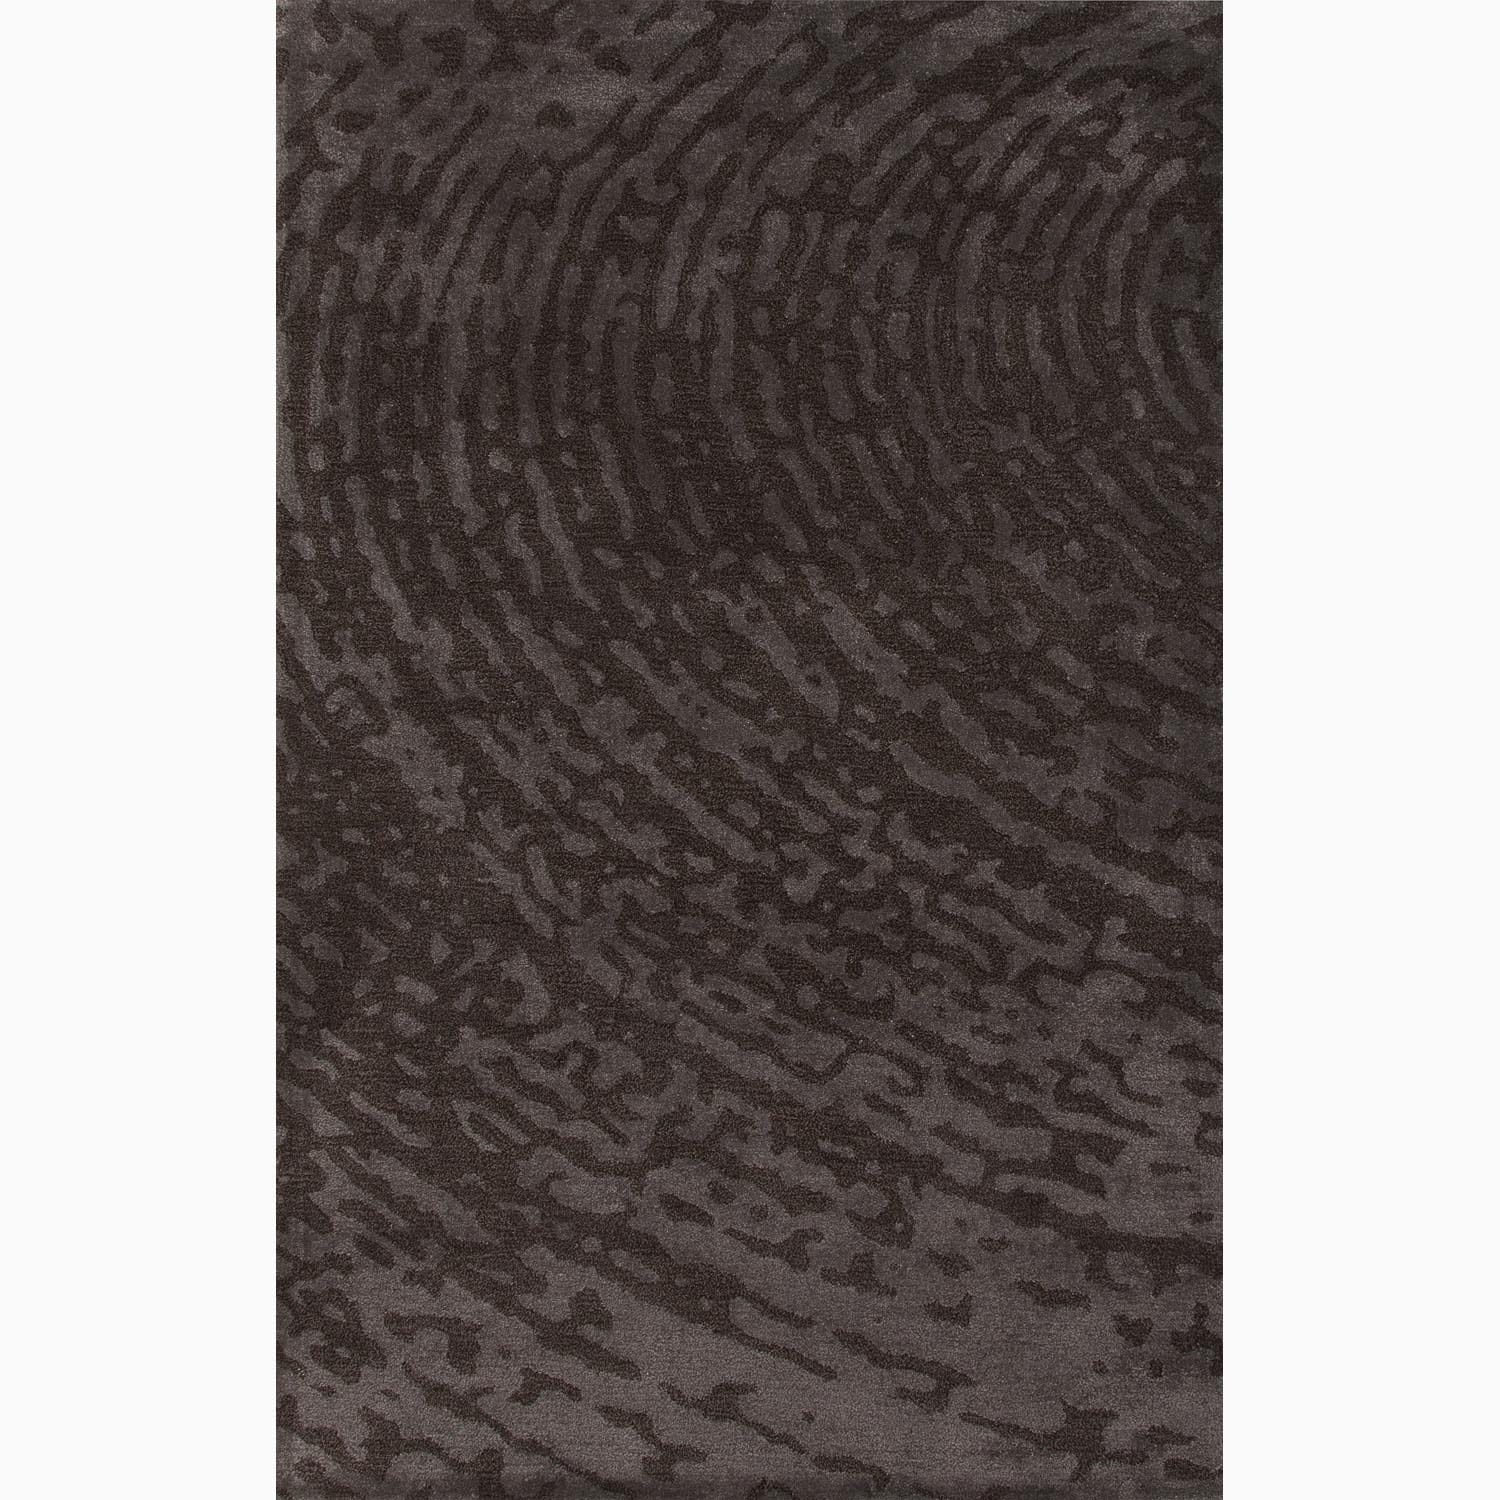 Hand made Brown/ Gray Wool/ Art Silk Textured Rug (8x10)